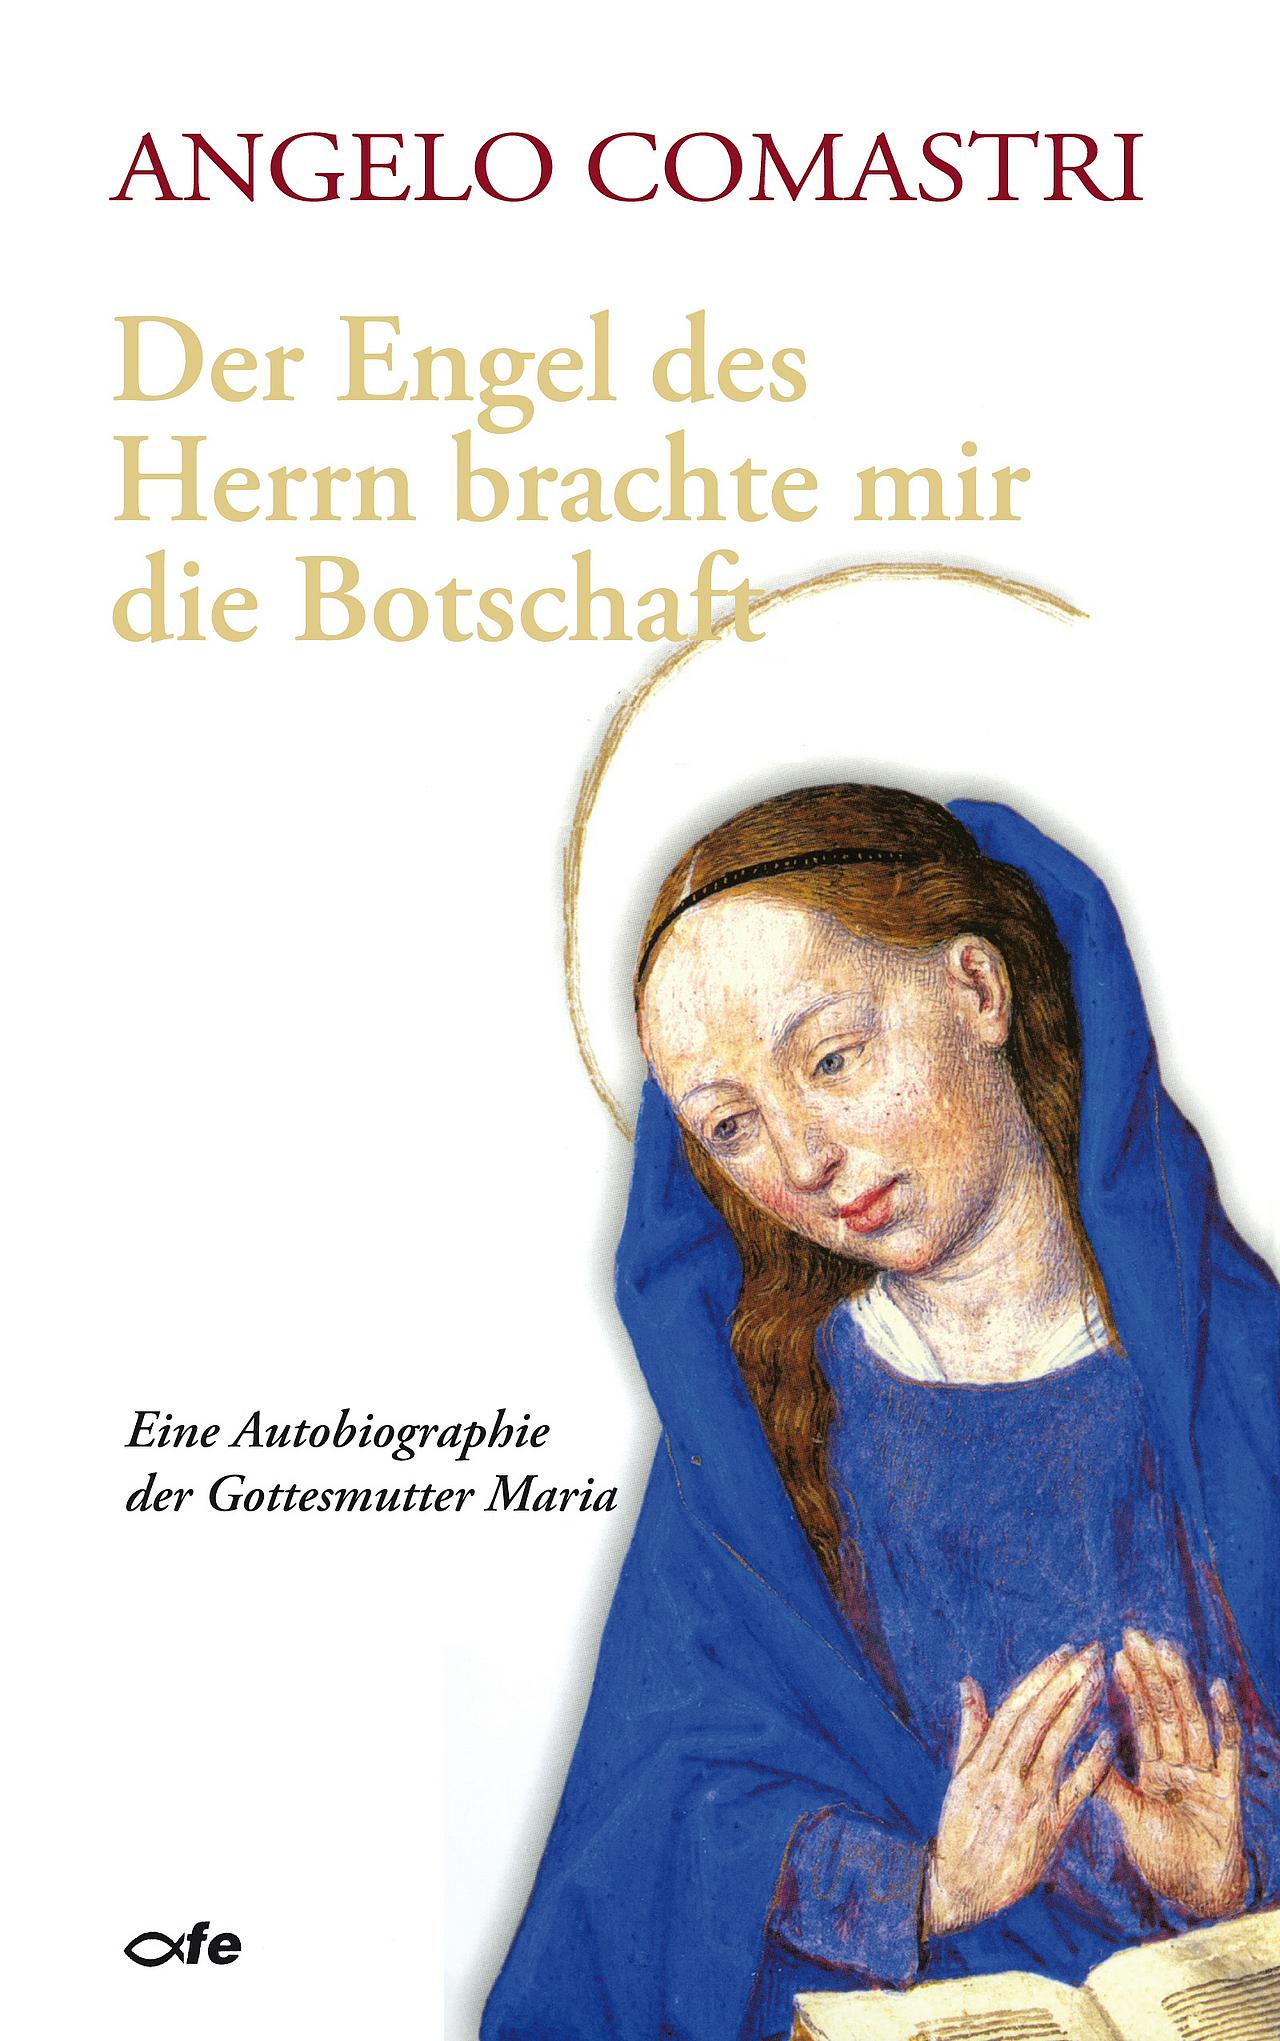 Buchcover: Eine Autobiographie der Gottesmutter Maria